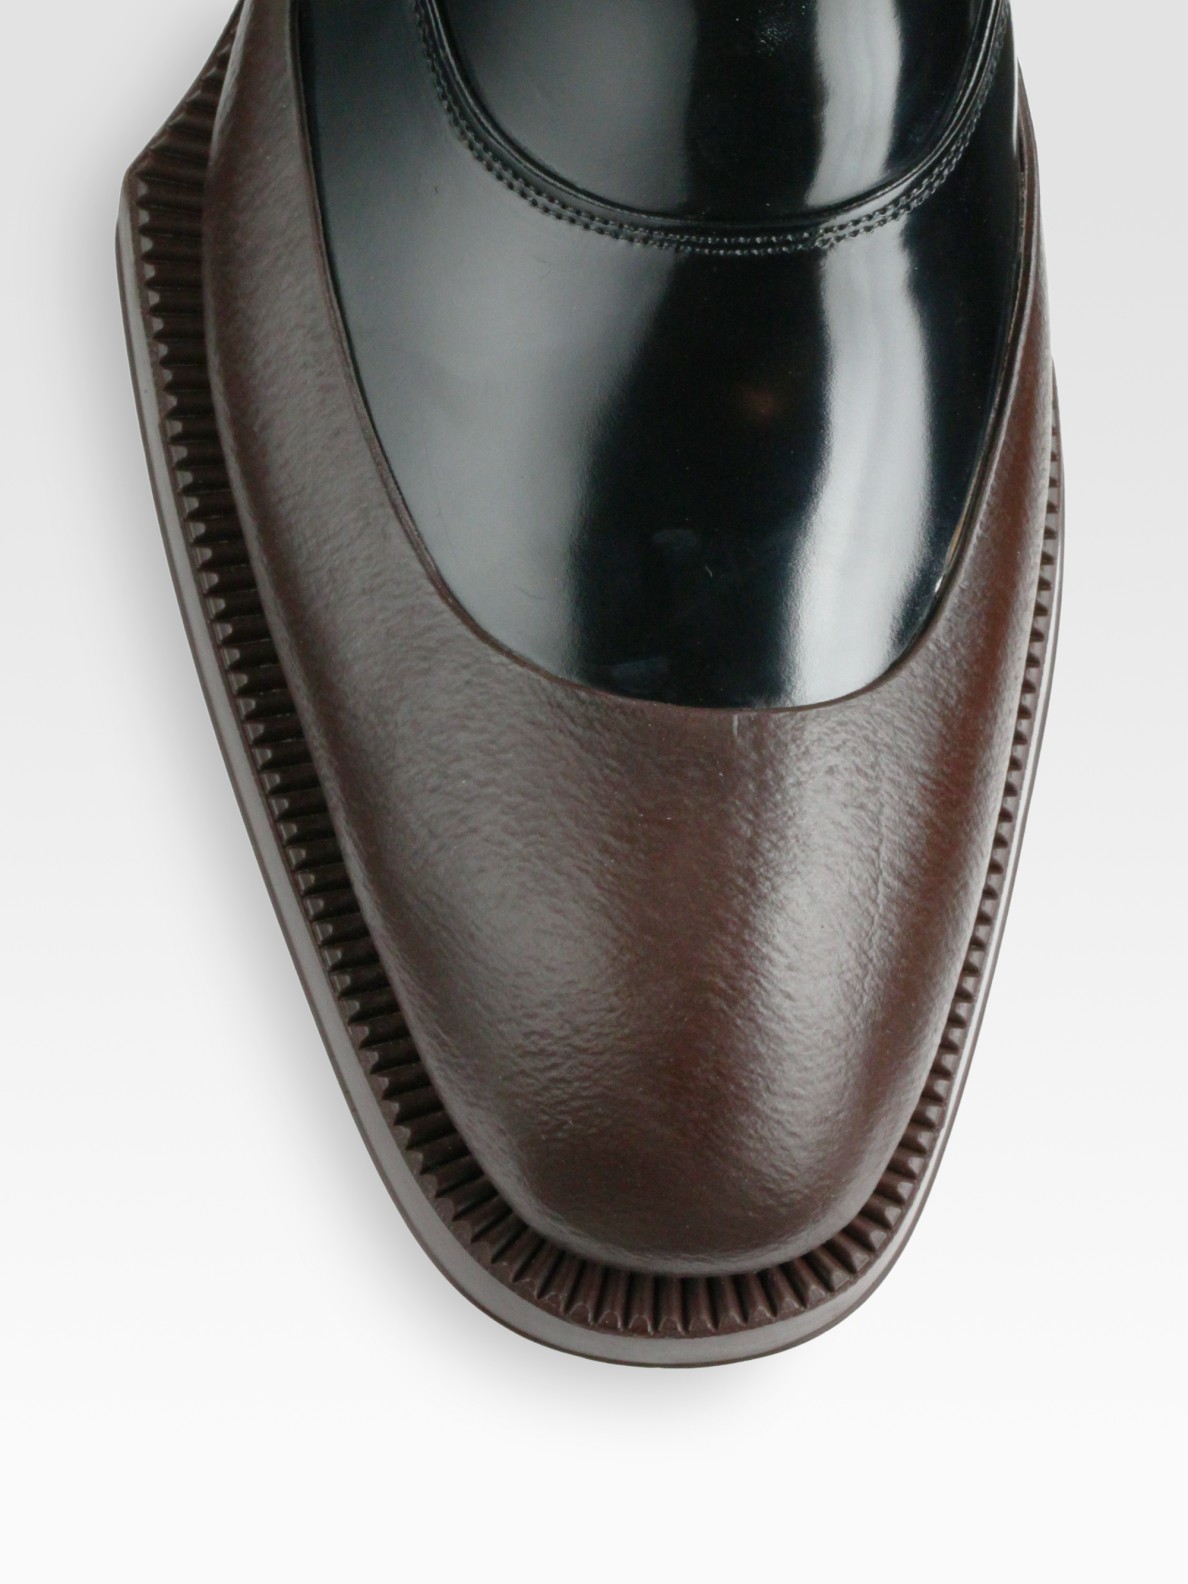 prada rubber dipped shoes, OFF 71%,www.amarkotarim.com.tr